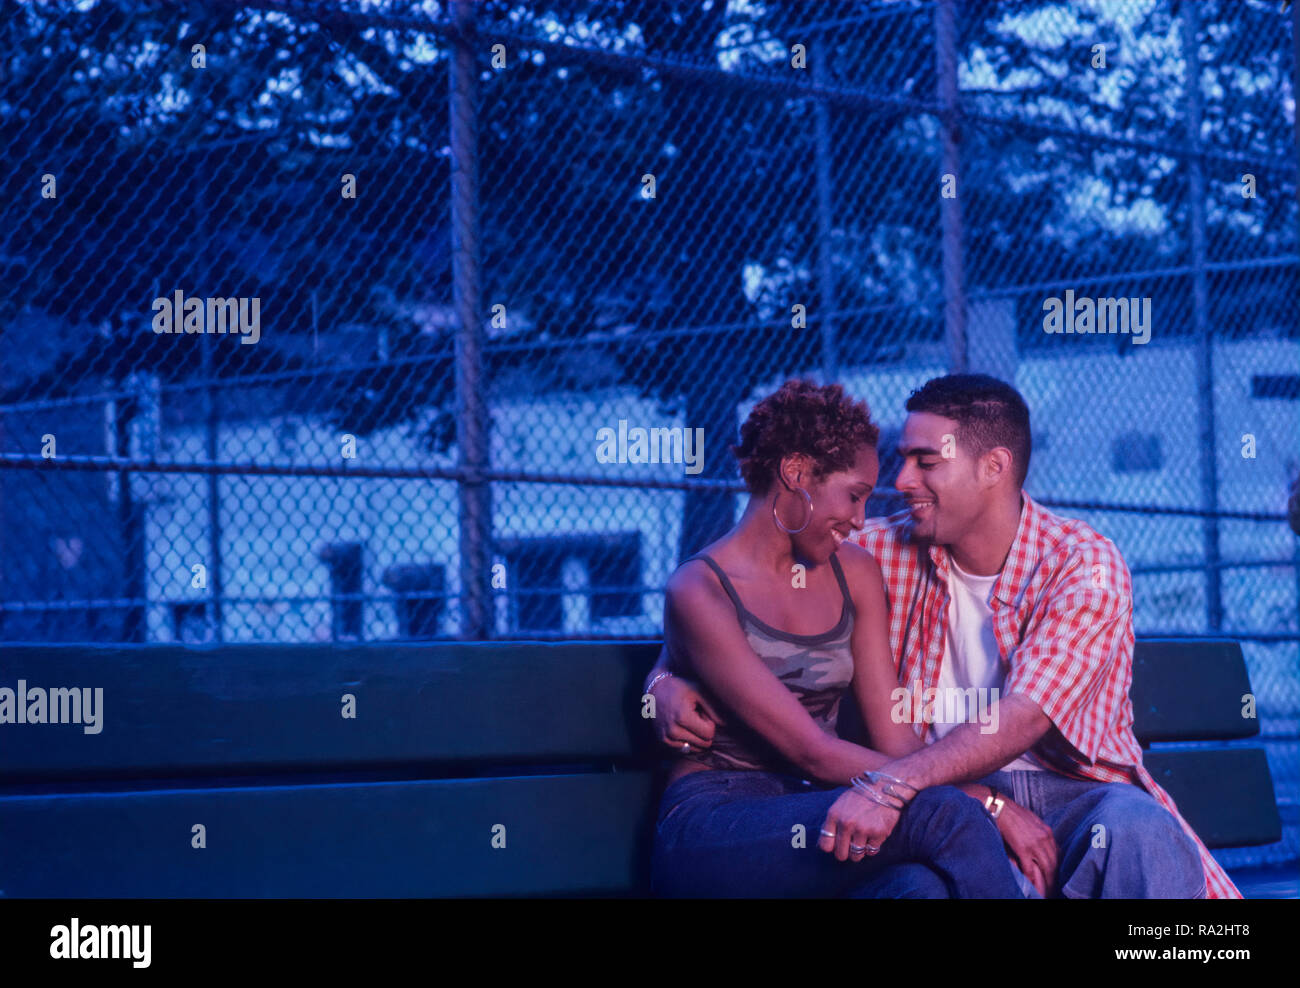 Jeune couple flirting ethnique urbaine sur un banc de parc au crépuscule ou en début de soirée Banque D'Images